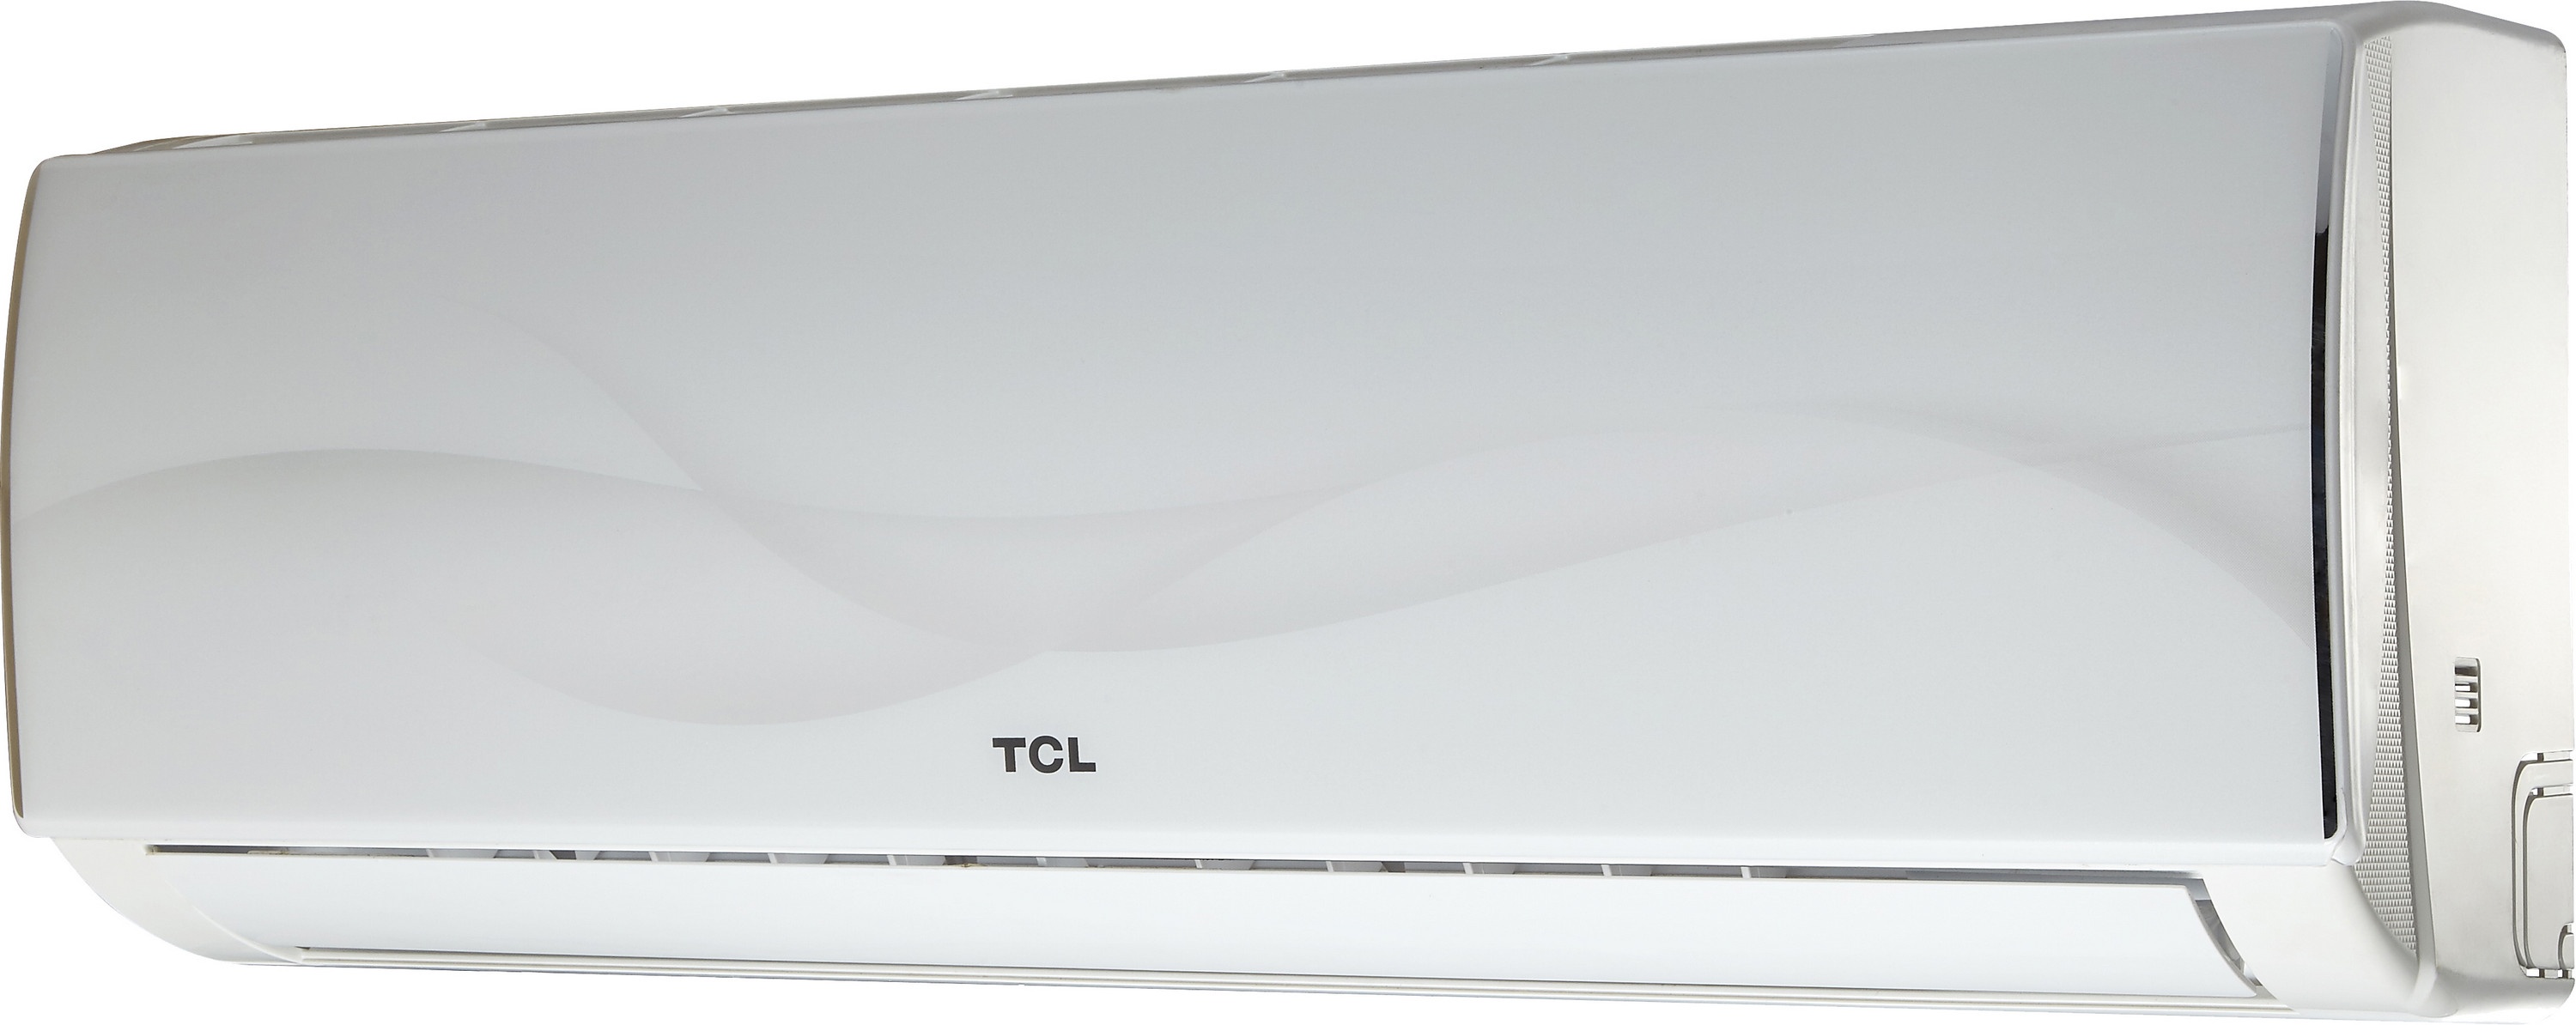 Внутренний блок мультисплит-системы TCL Elite XA31 12000 BTU Inverter цена 0.00 грн - фотография 2